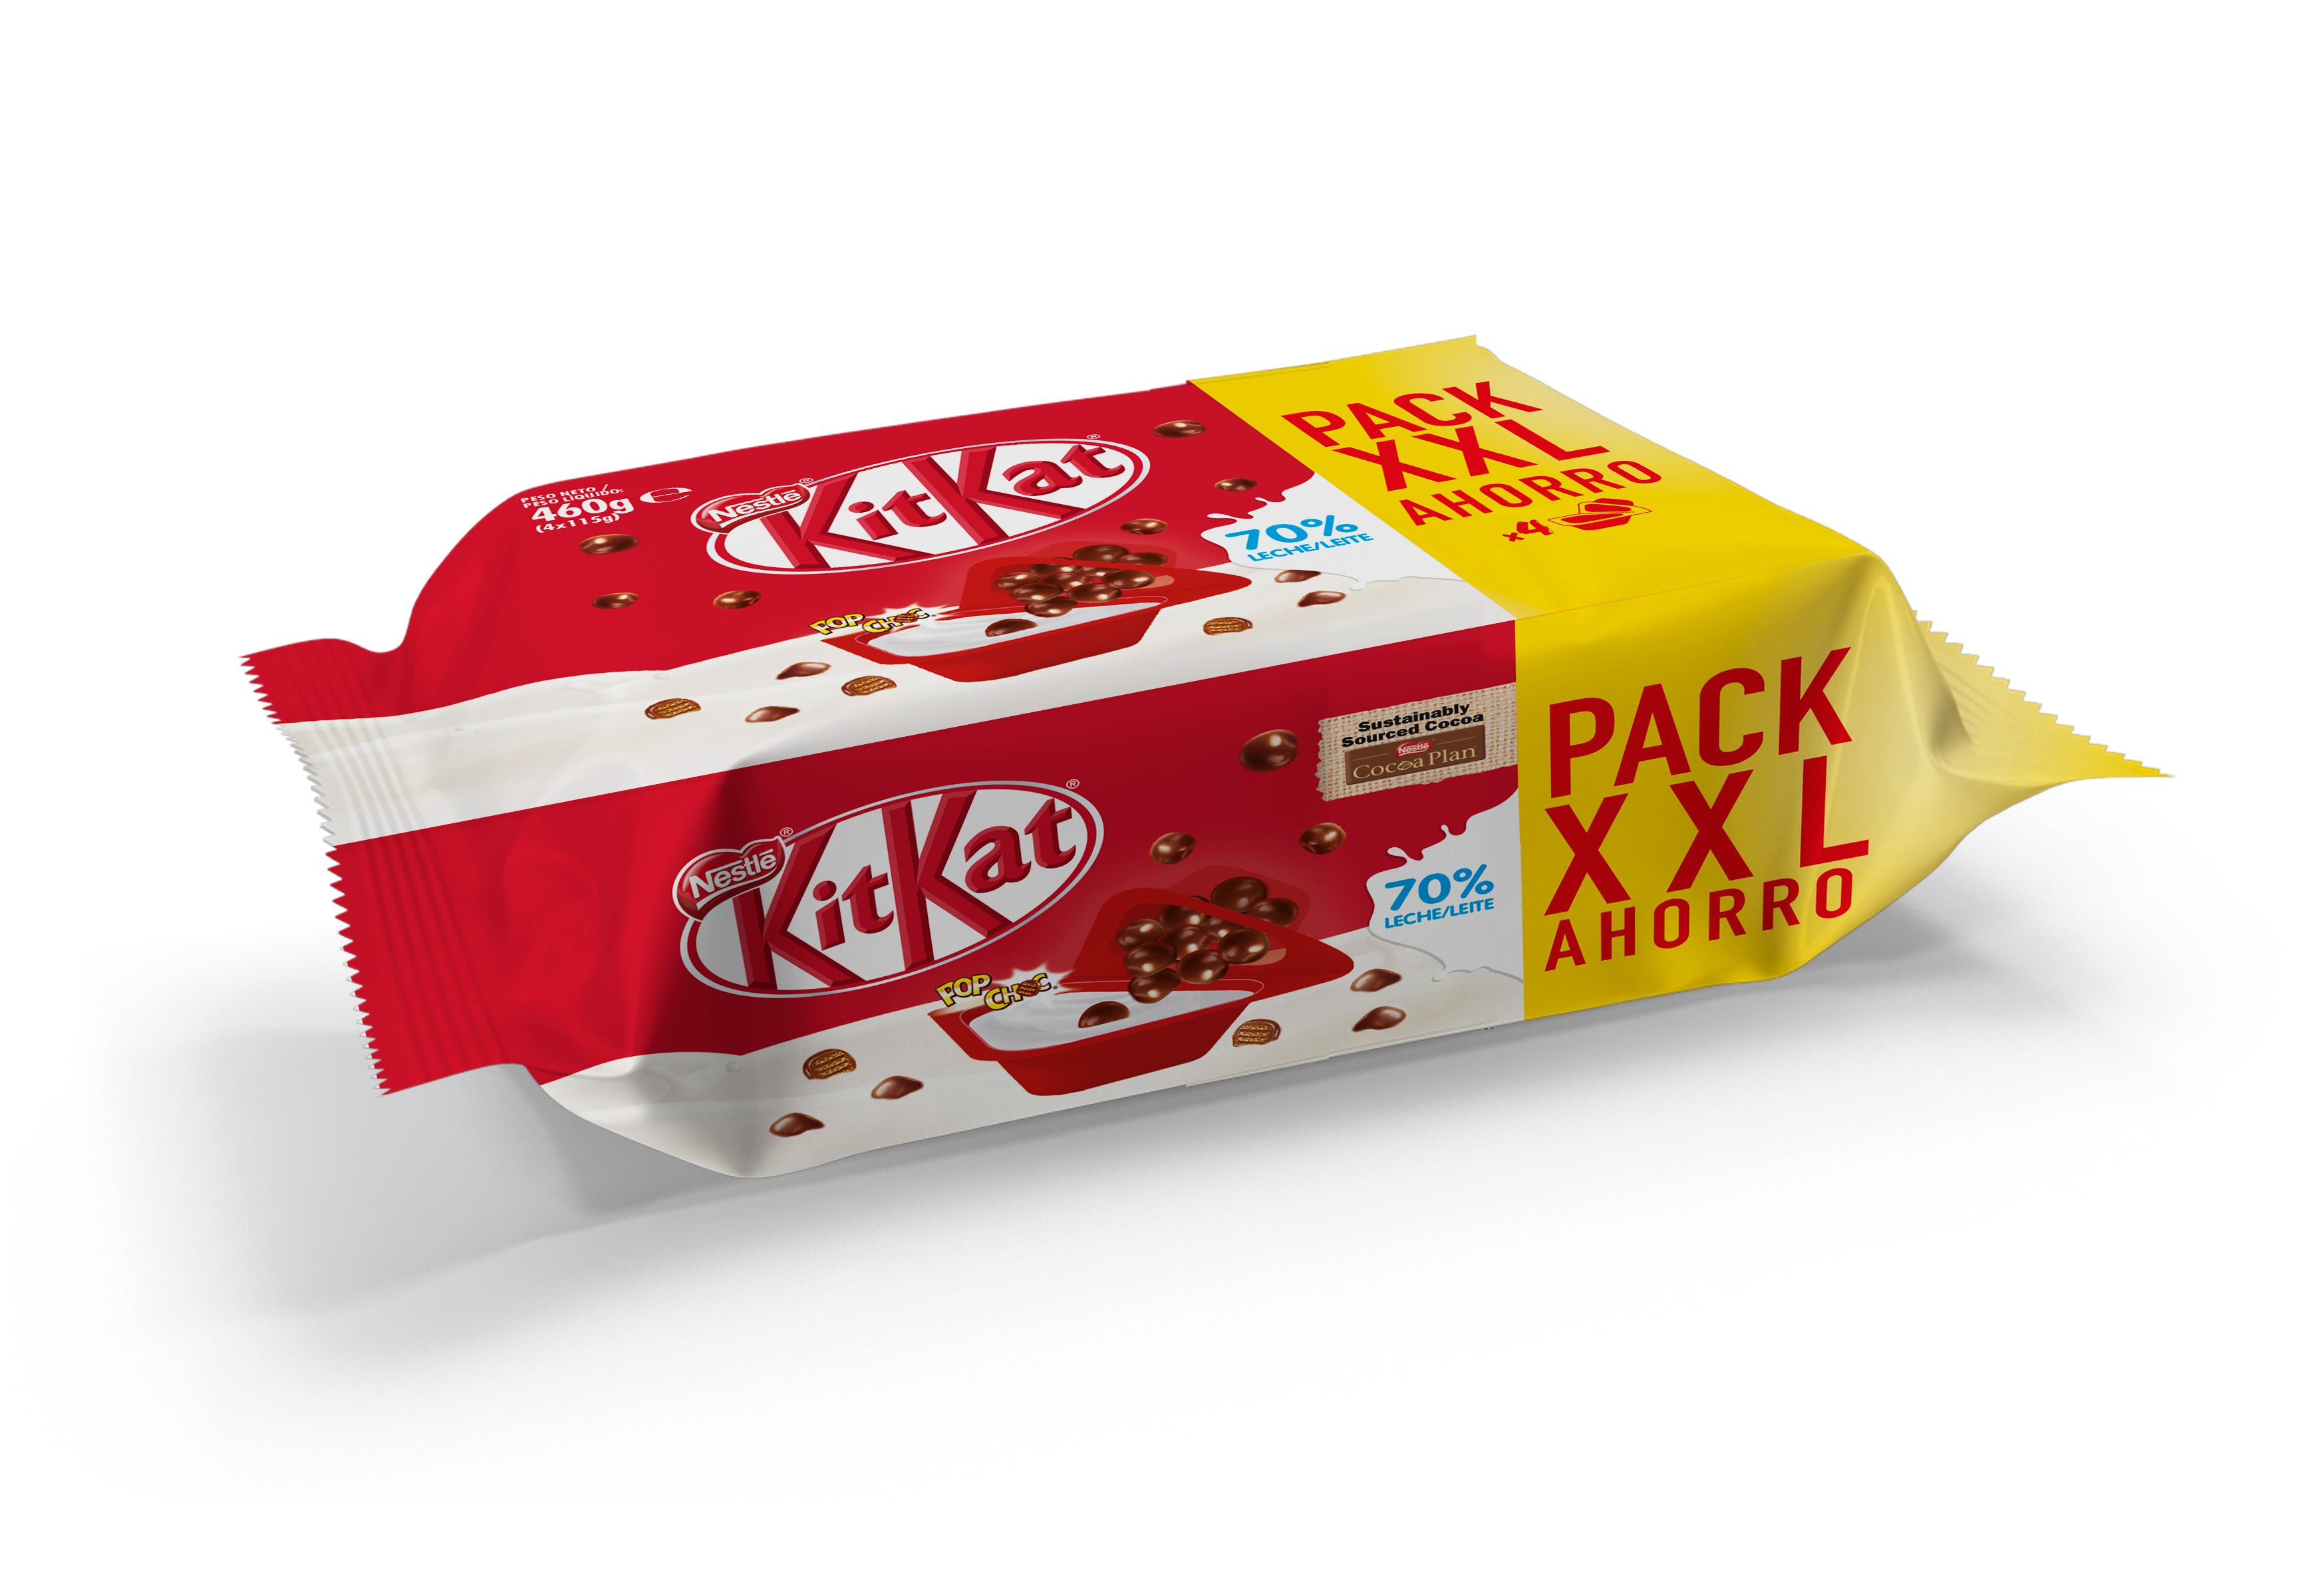 Mix-in Kit Kat azucarado pack ahorro x4